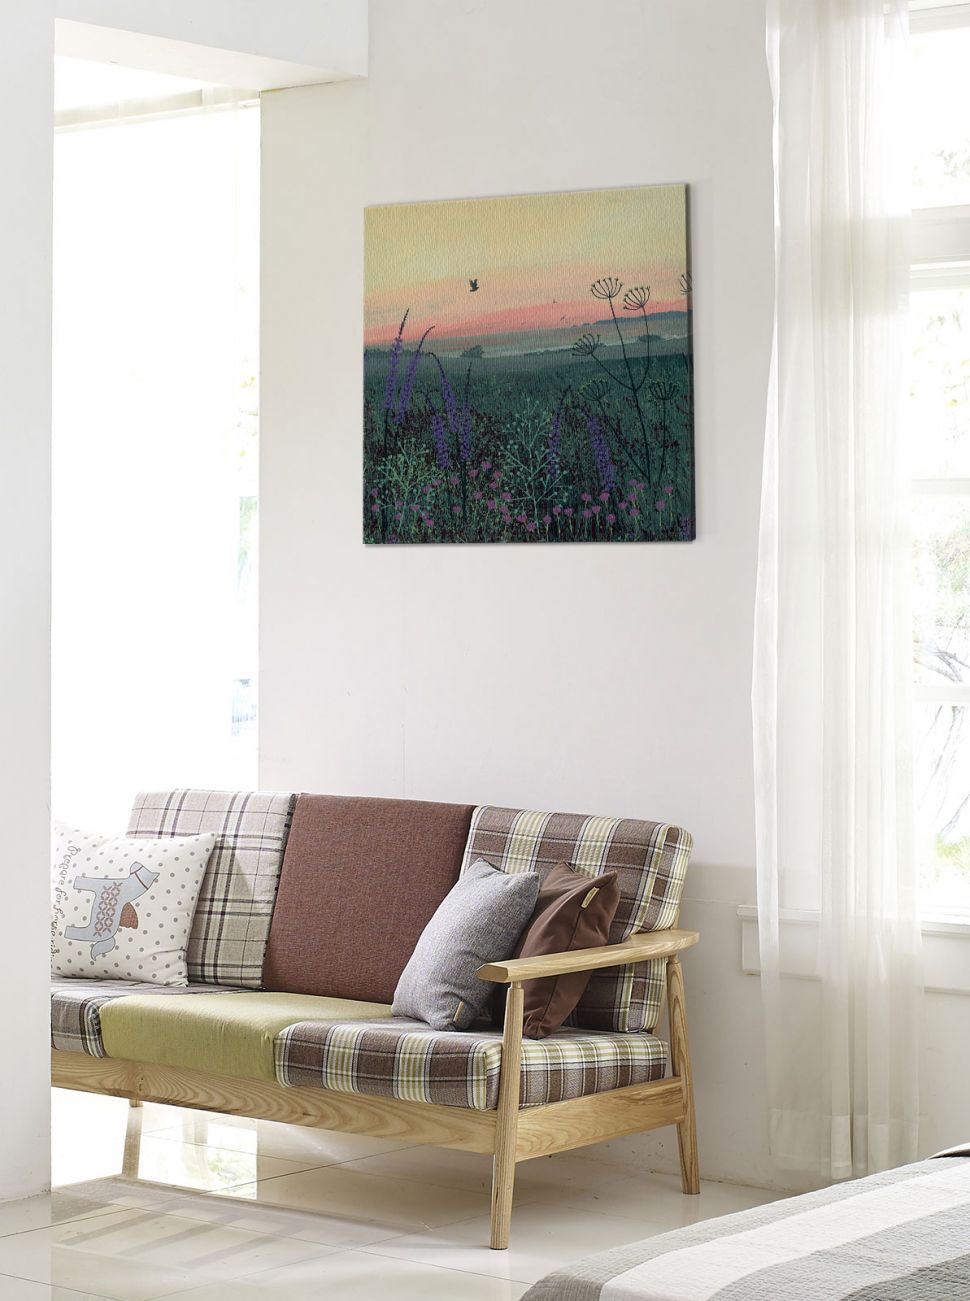 Obraz na płótnie Coastal Dawn wiszący nad kanapą na białej ścianie w przedpokoju